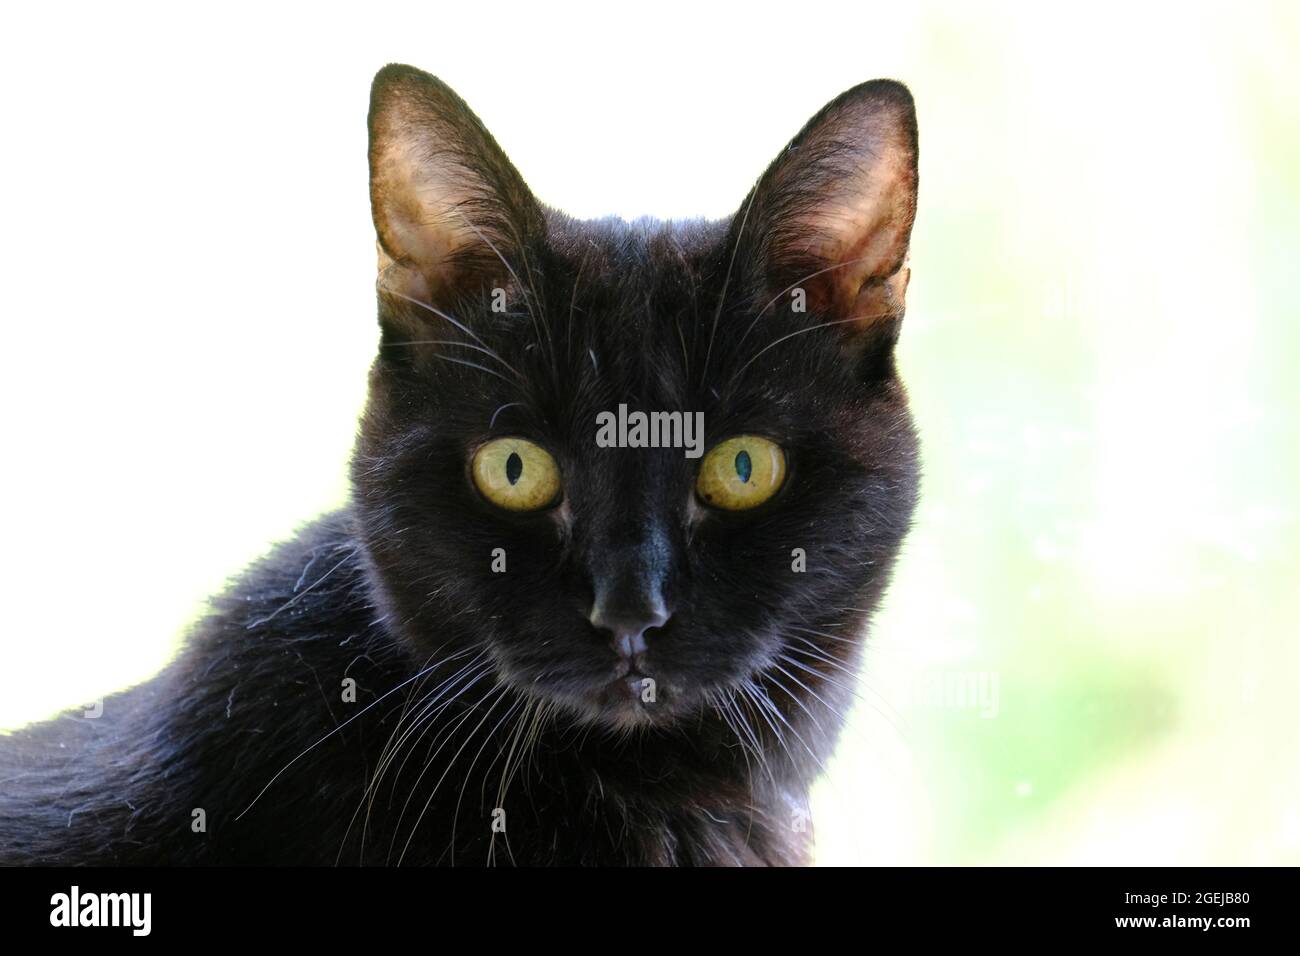 Gato negro adulto mayor (Felis catus) mirando directamente a la cámara Foto de stock